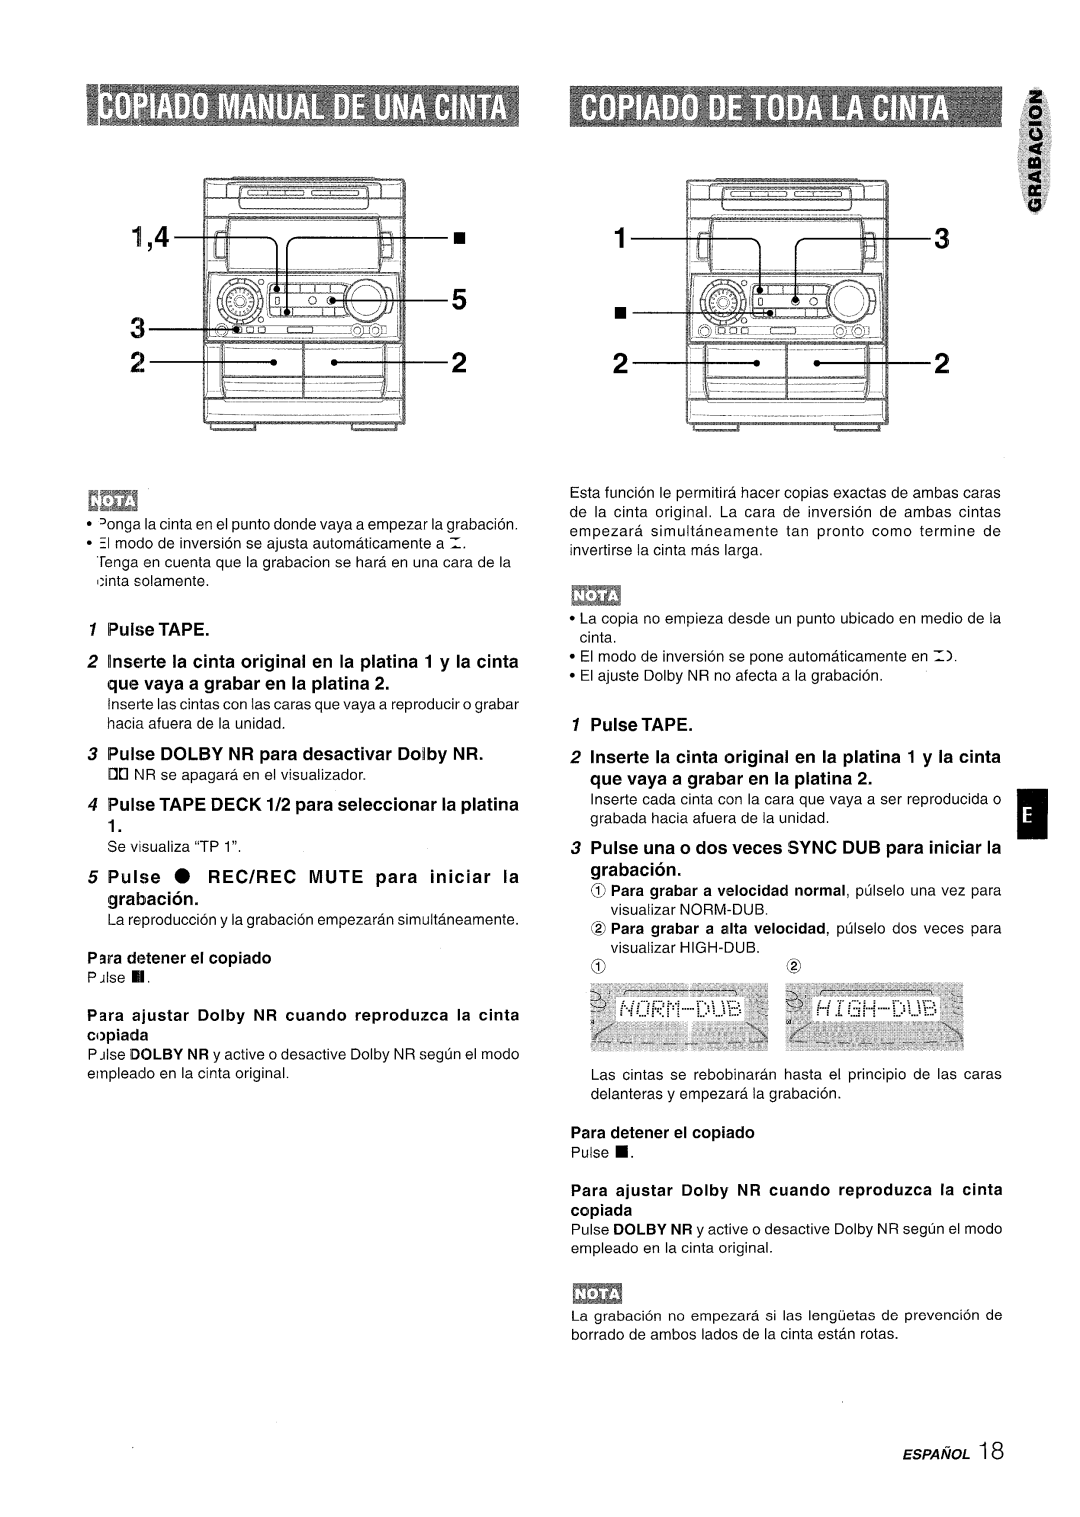 Aiwa NSX-A909 manual Pulse TAPE DECK 1/2 para seleccionar la platina, Pulse una o dos veces SYNC DUB para iniciar la 